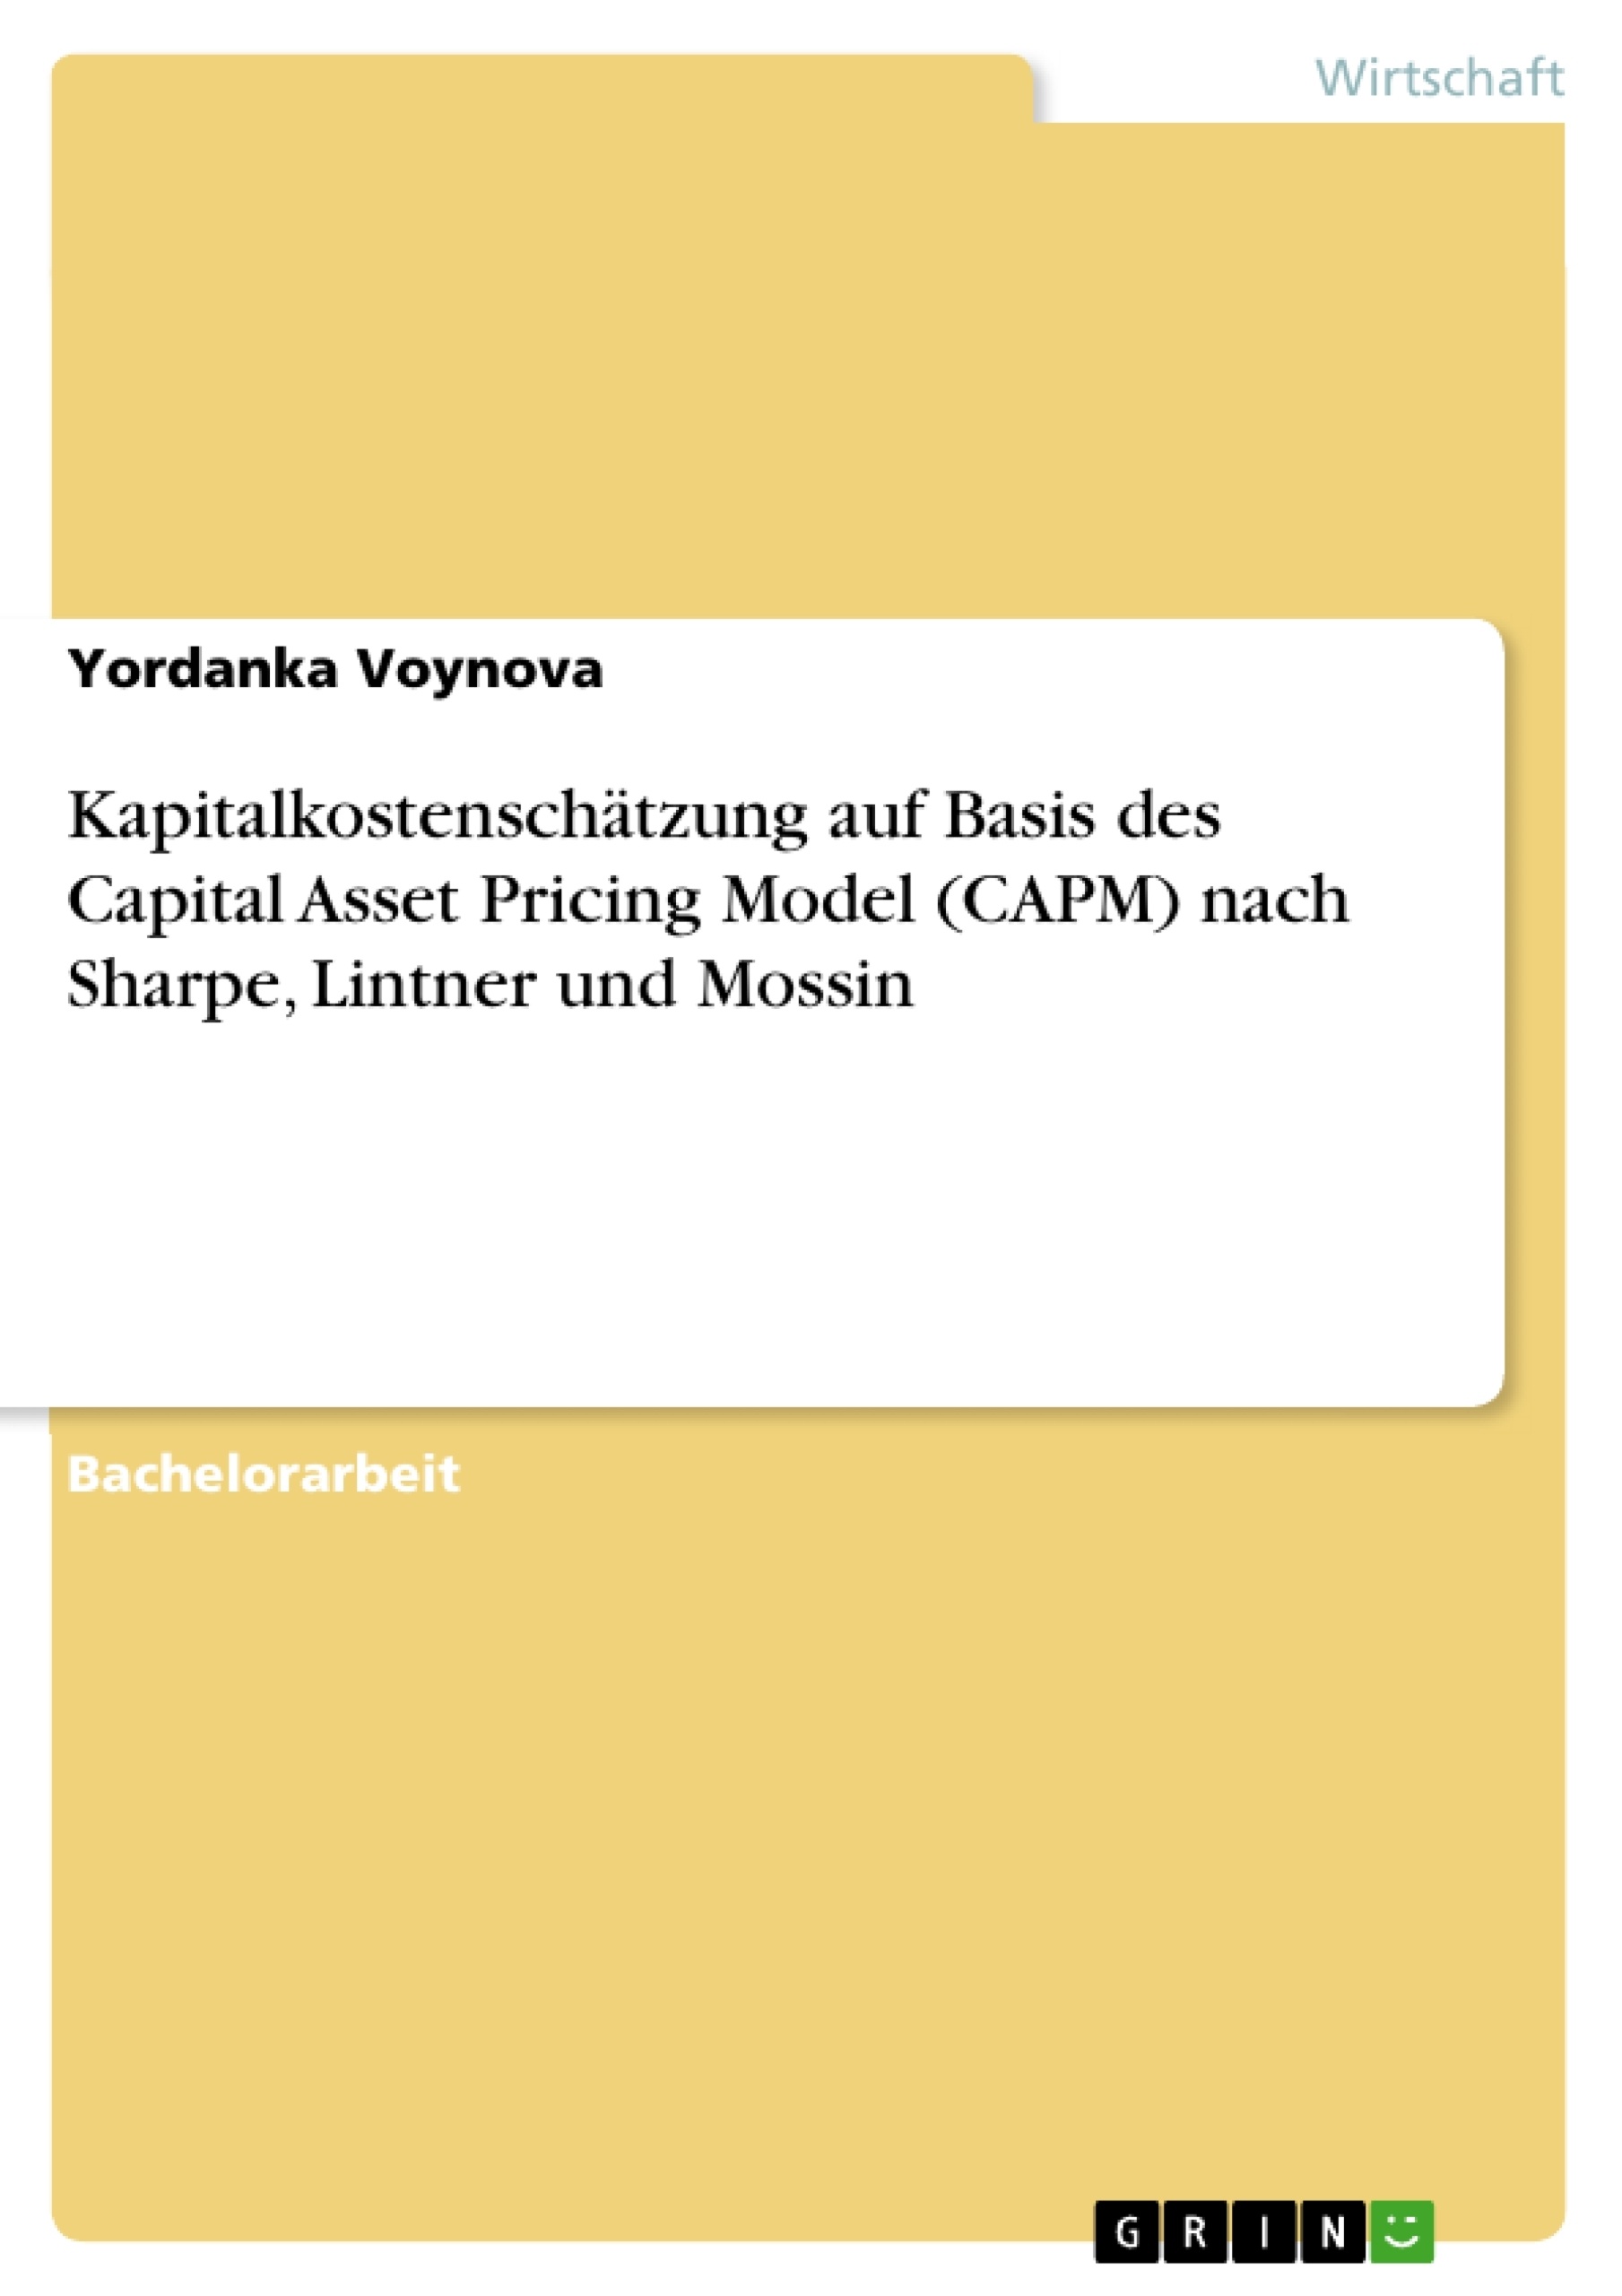 Título: Kapitalkostenschätzung auf Basis des Capital Asset Pricing Model (CAPM) nach Sharpe, Lintner und Mossin